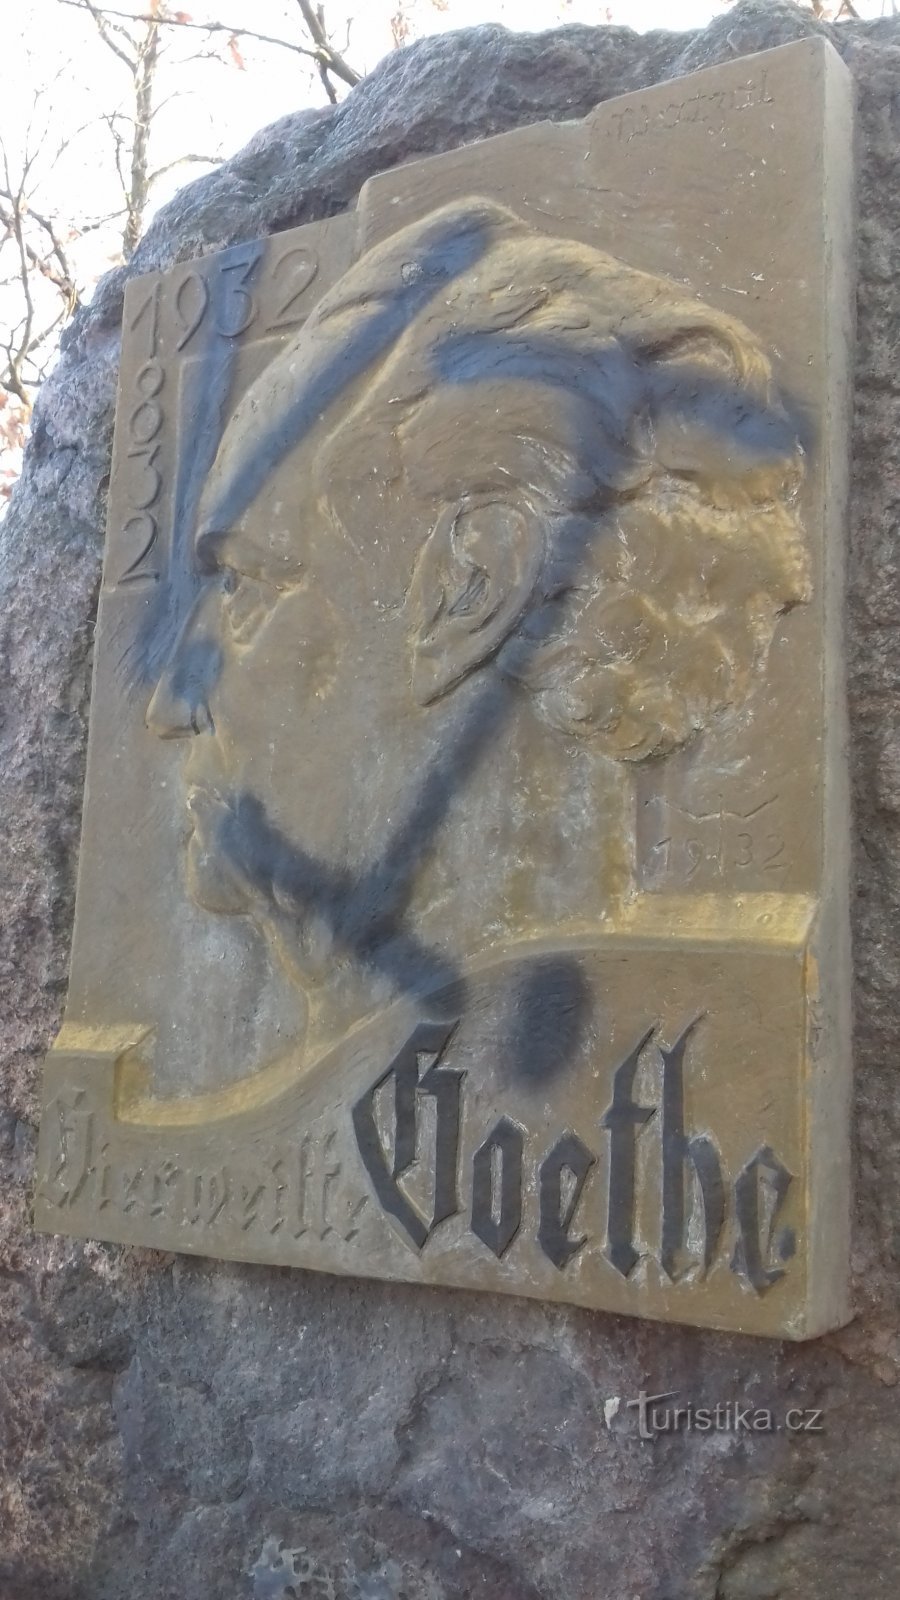 commemorative plaque